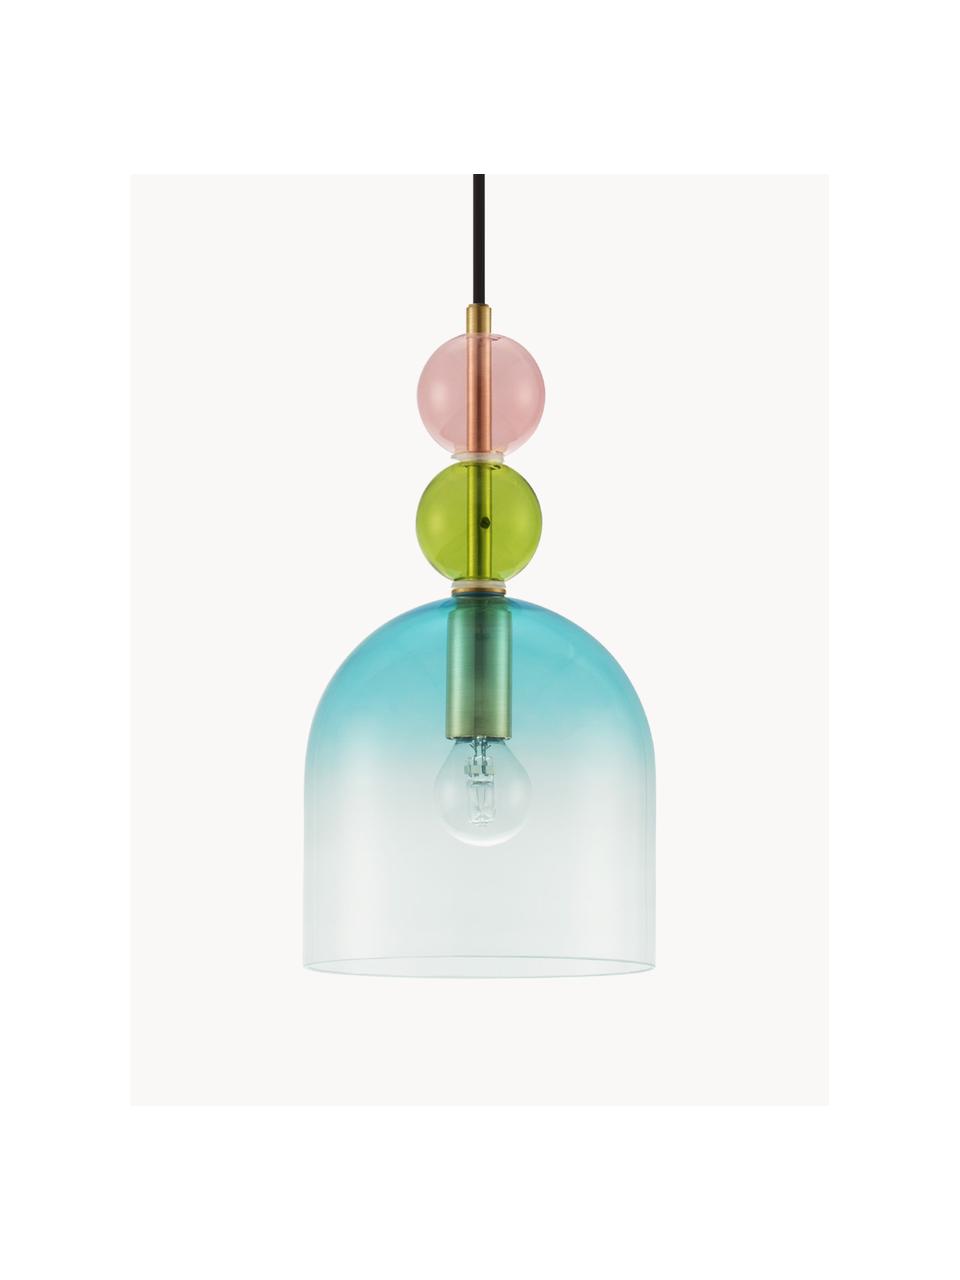 Kleine hanglamp Murano, Turquoise, roze, olijfgroen, Ø 16 x H 30 cm